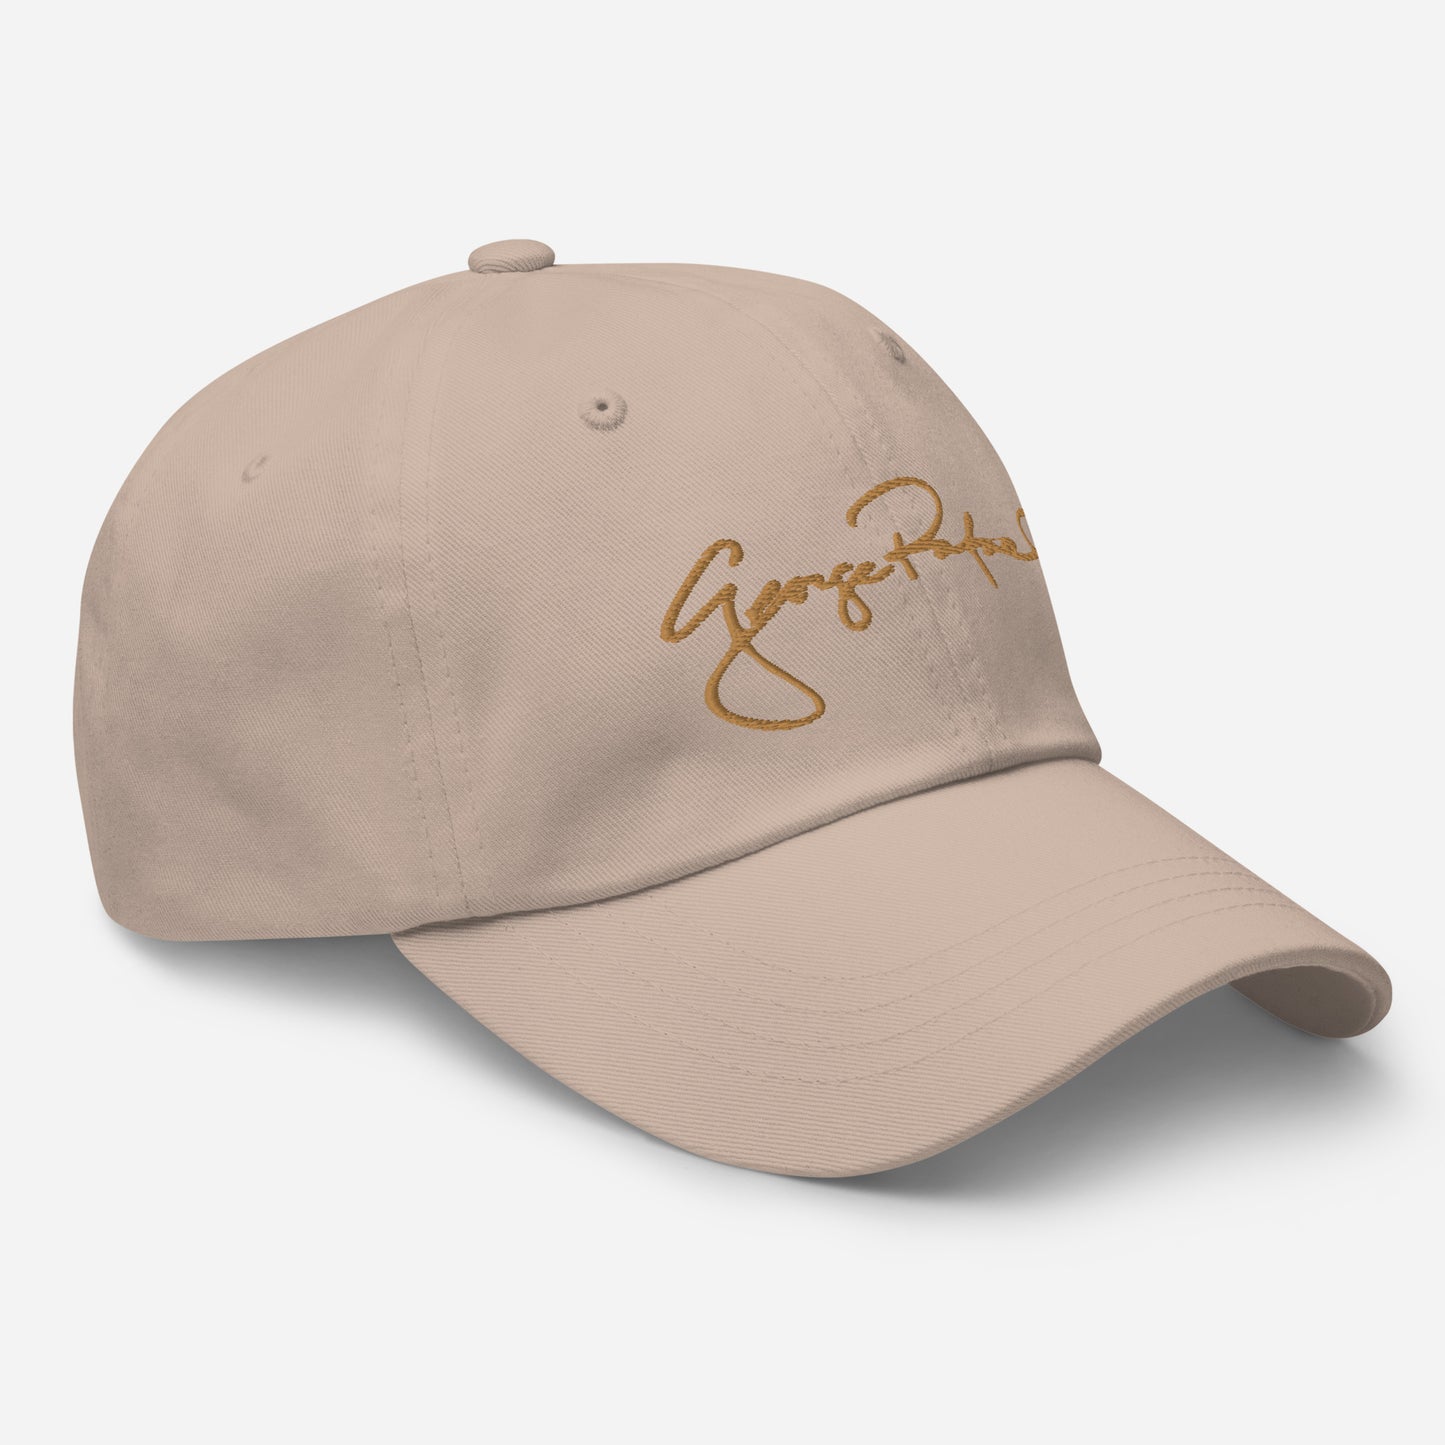 George Rafael Signature Dad hat